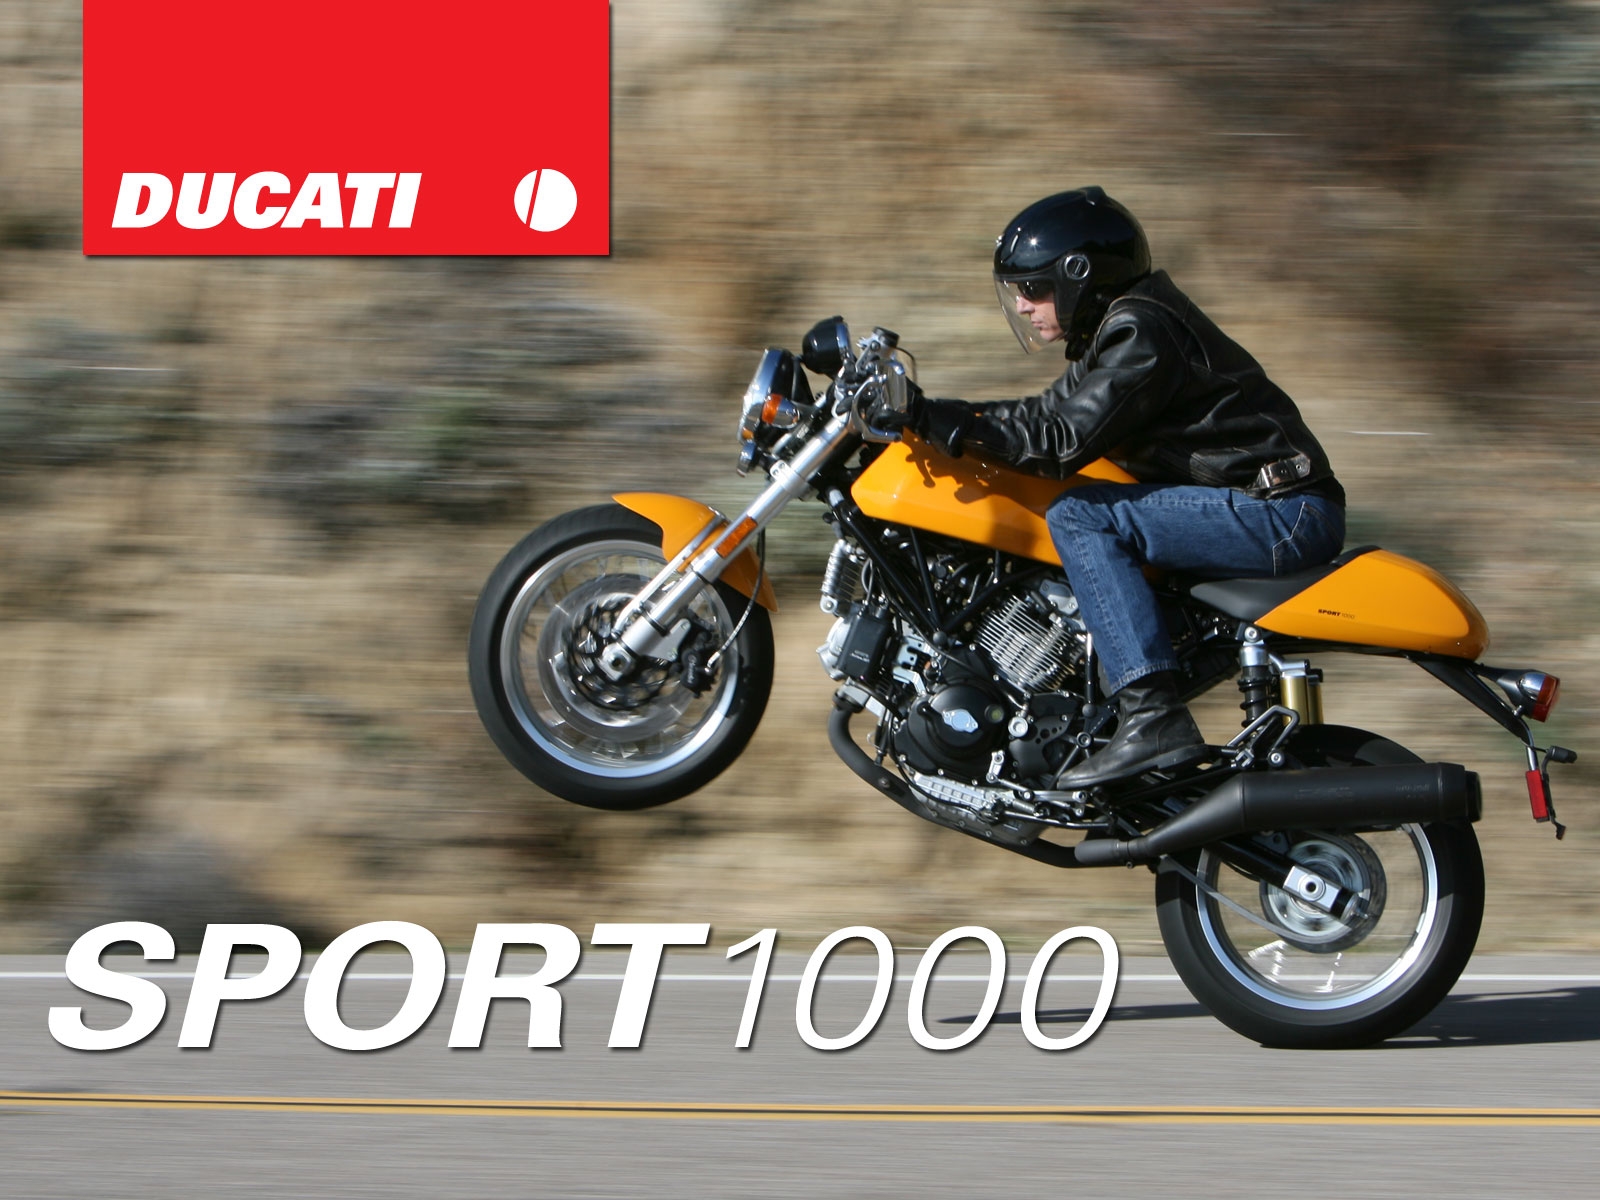 2007款杜卡迪Sport 1000 biposto摩托车图片1